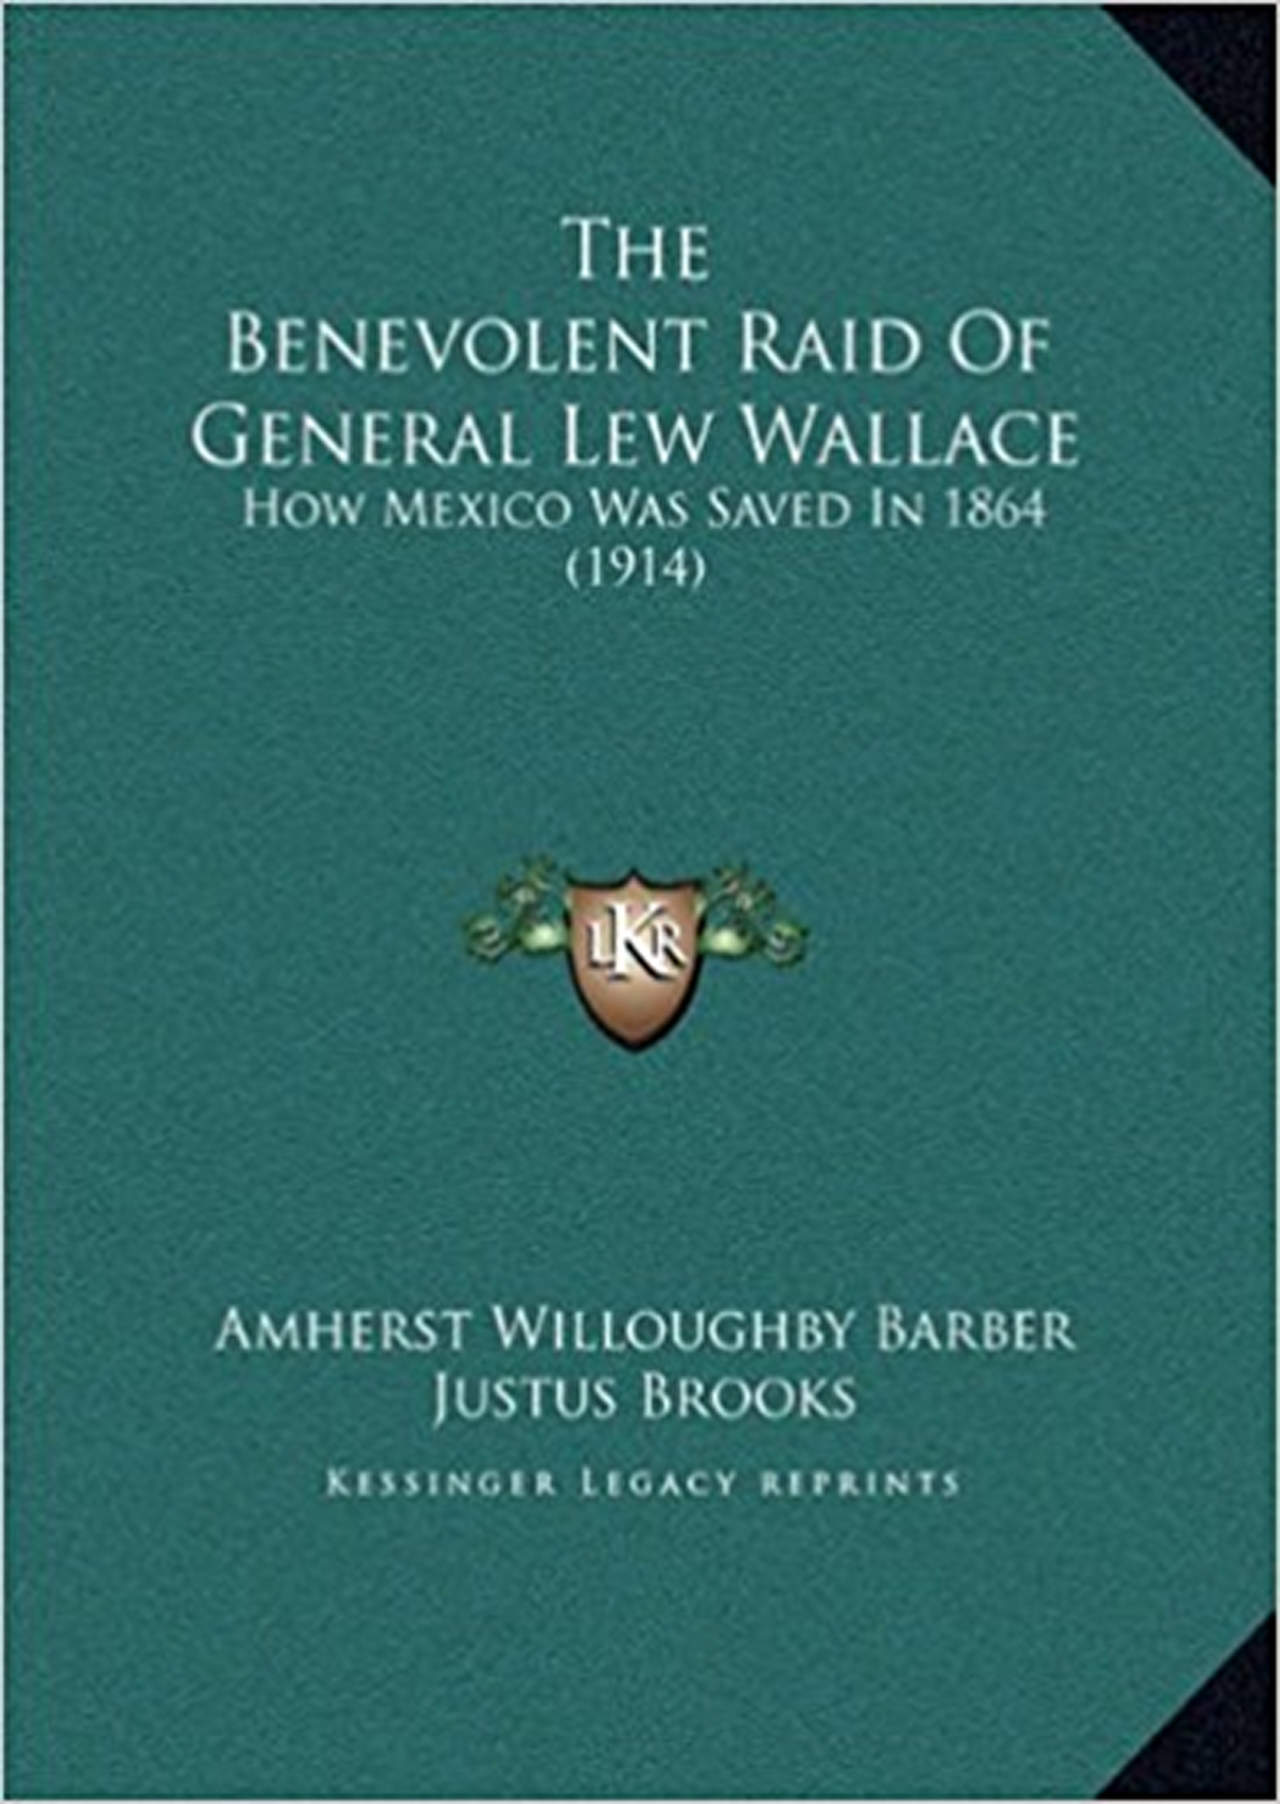 Cinismo filibustero: La benévola incursión del General Lew Wallace: cómo México fue salvado en 1864; obra de Amherst W. Barber que narra la intervención
norteamericana contra el ImperioMexicano
desde 1864.